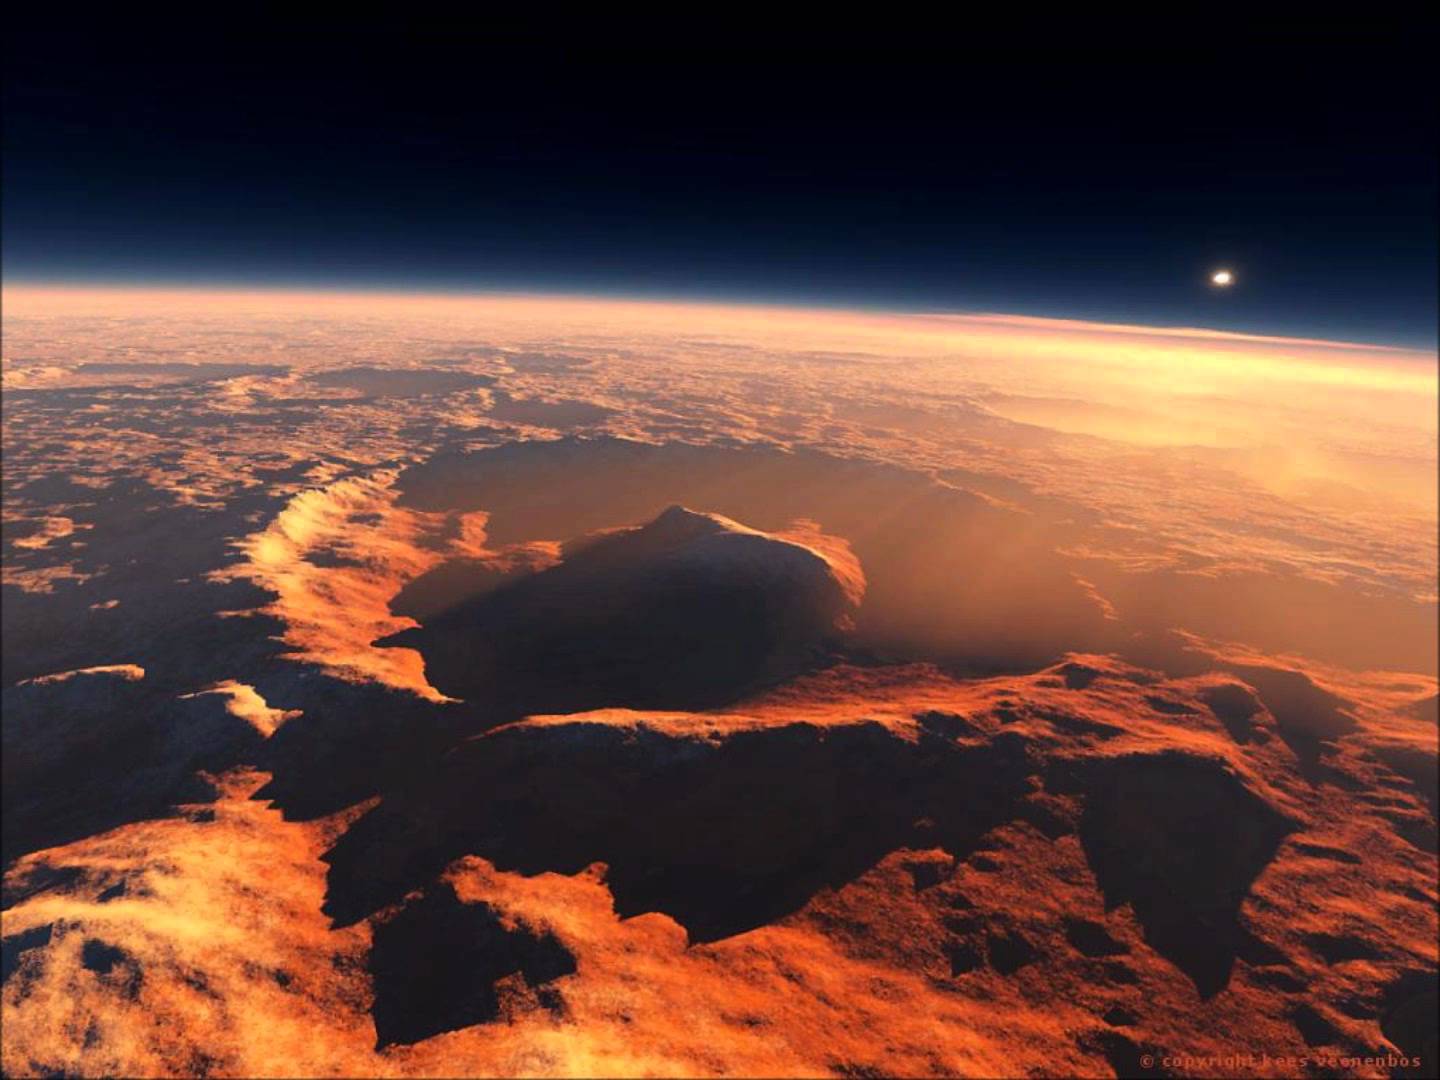 Βίντεο: Εκατό παράξενα πράγματα που βρέθηκαν στον πλανήτη Άρη